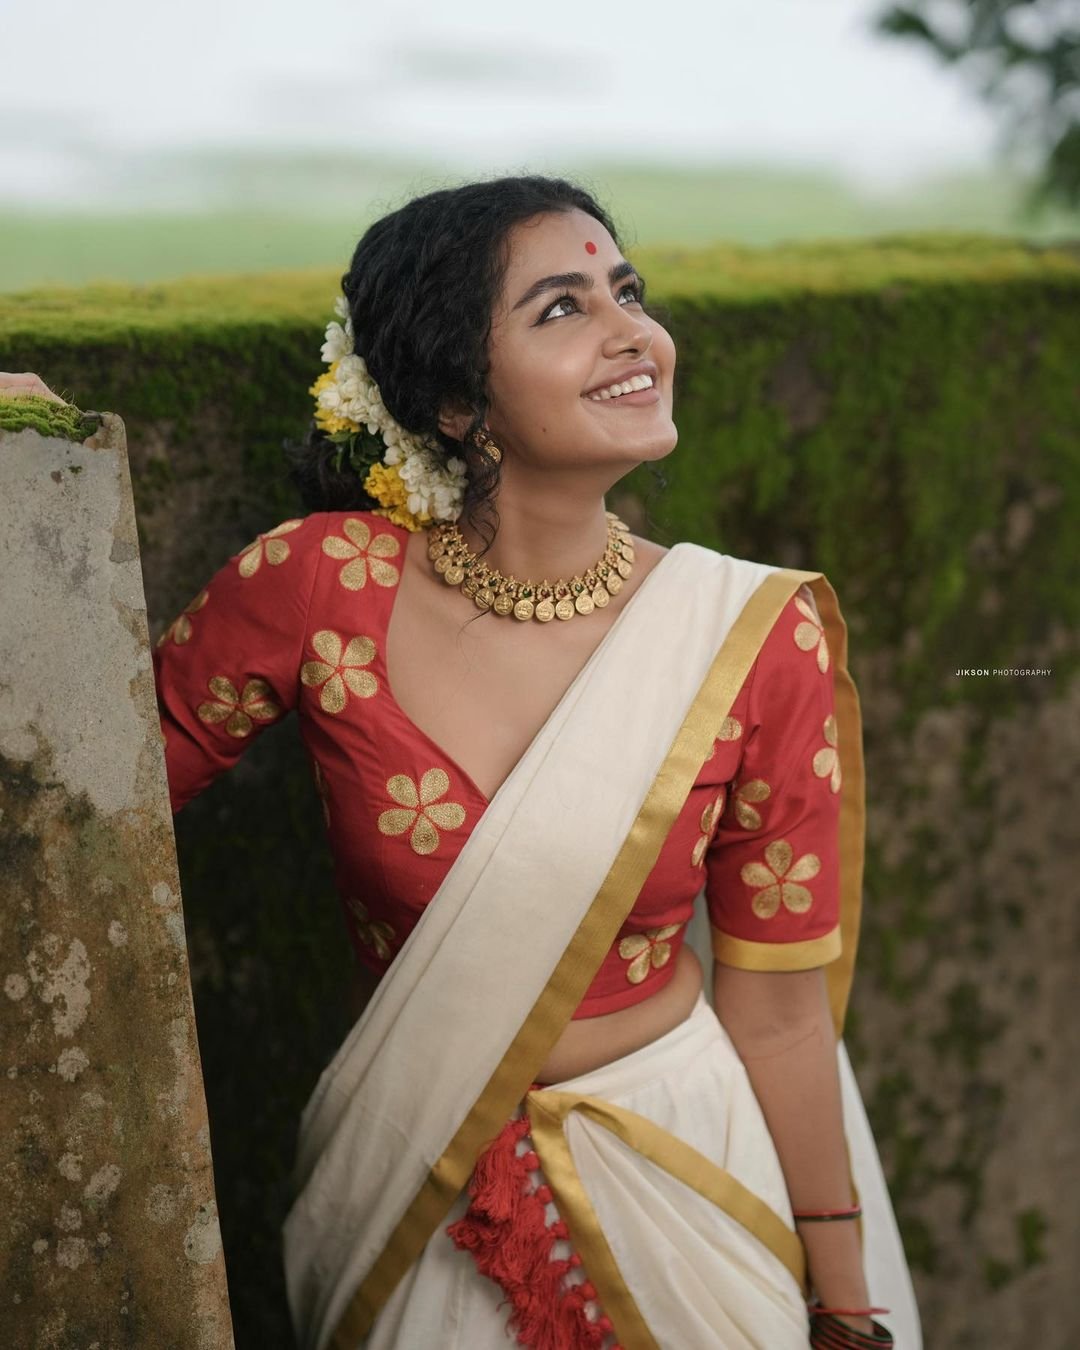 Anupama-Parameswaran-looks-elegant-in-saree-13